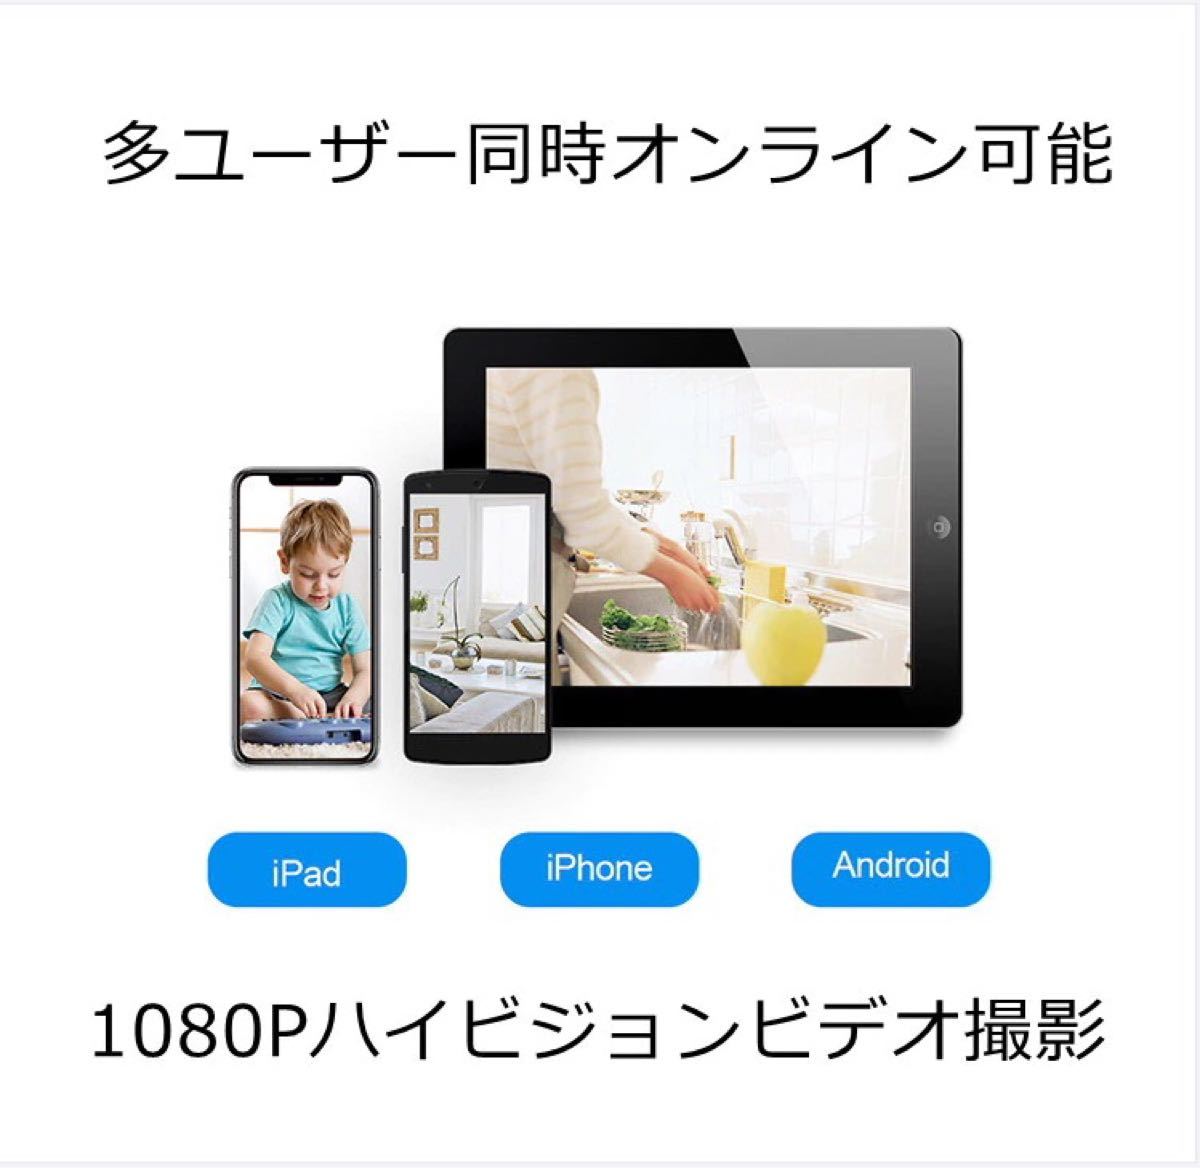 日本語取説 ネットワークカメラ Wifi 1080P 200万画素 監視カメラ